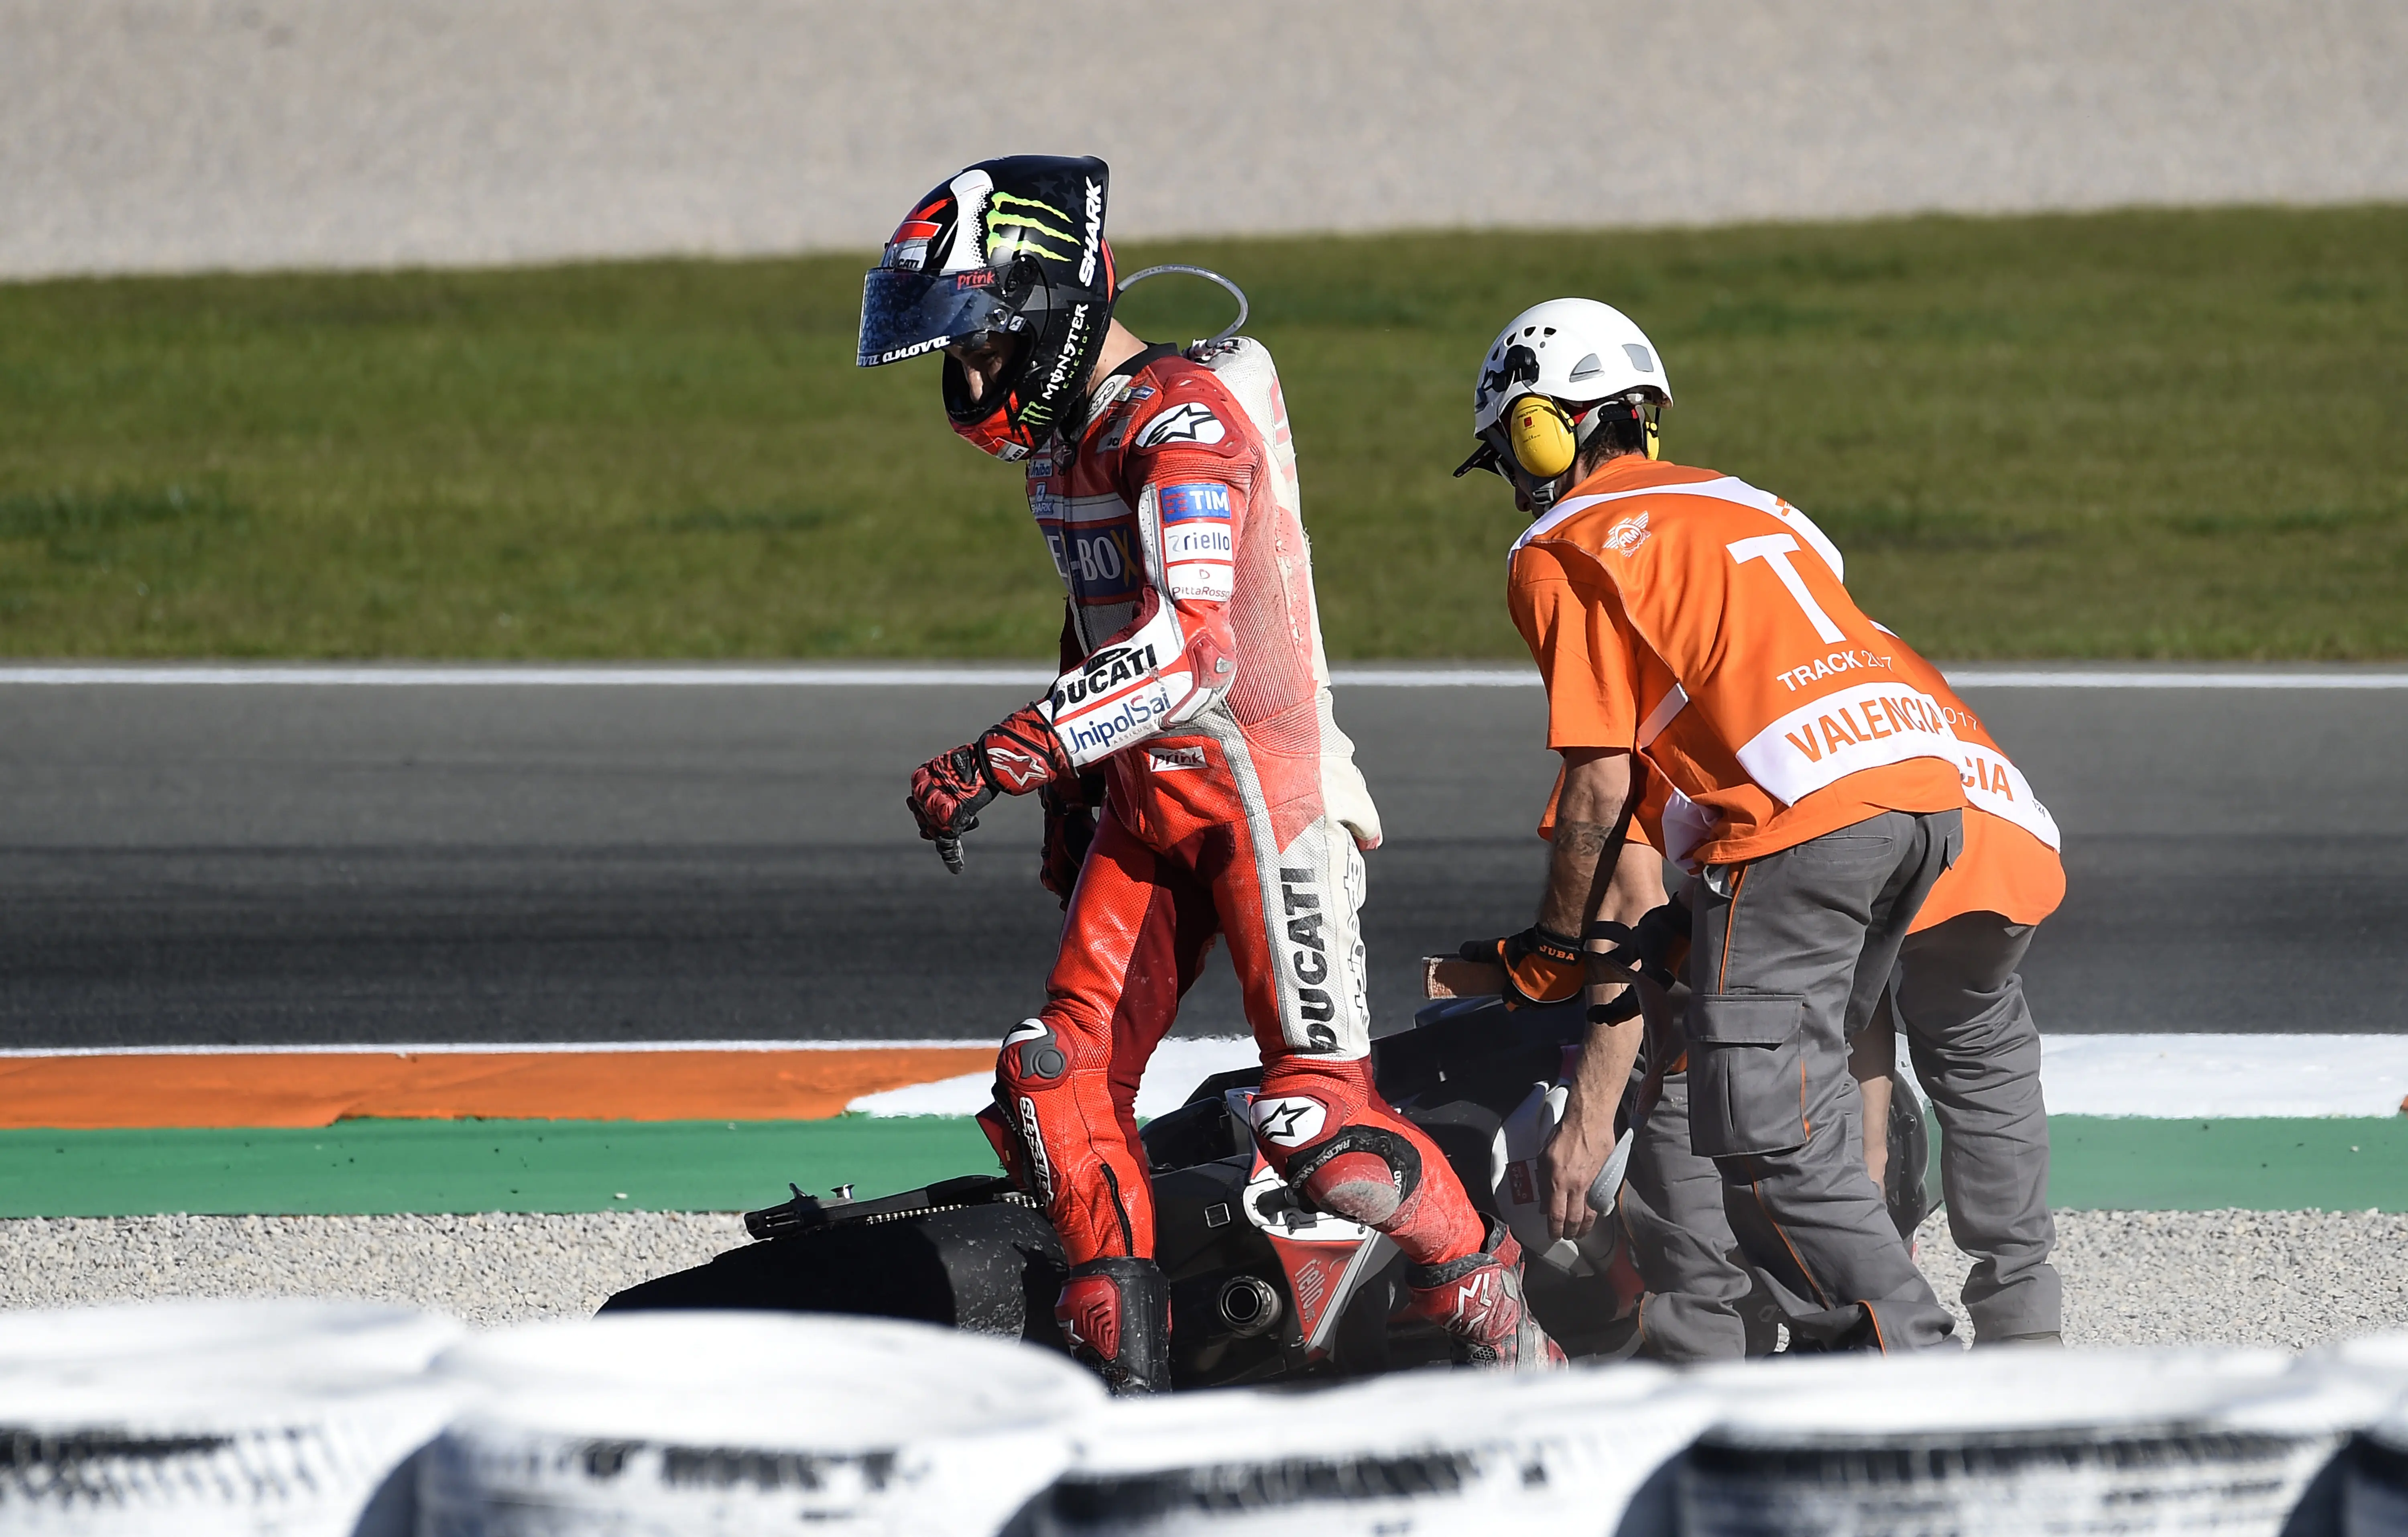 Pembalap Ducati, Jorge Lorenzo saat gagal mencapai garis finis pada MotoGP Valencia 2017. (JOSE JORDAN / AFP)